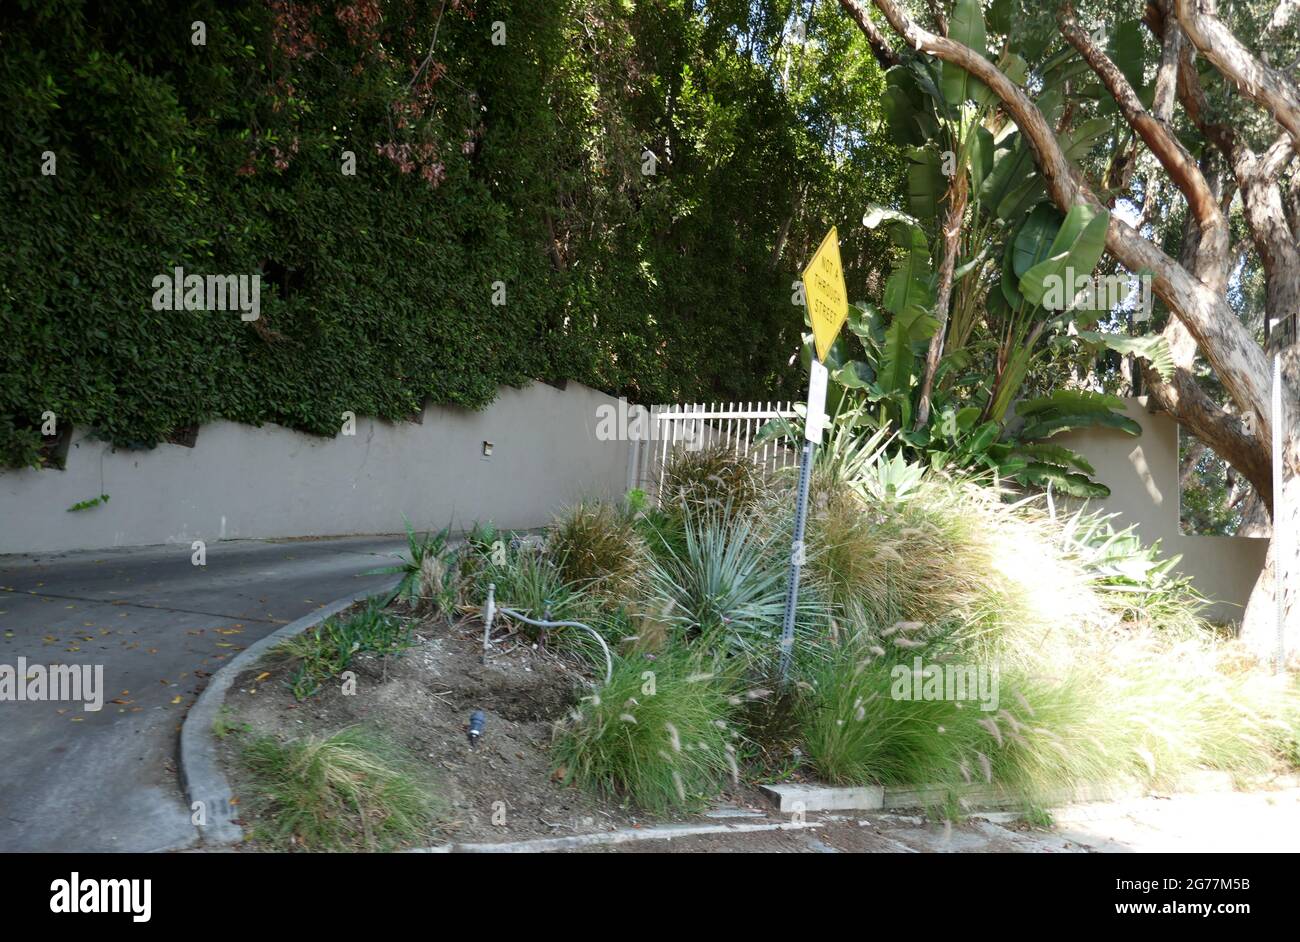 Los Angeles, Kalifornien, USA 11. Juli 2021 EIN allgemeiner Blick auf die Atmosphäre von Ida Lupinos früherem Zuhause am 1405 Miller Drive am 11. Juli 2021 in Los Angeles, Kalifornien, USA. Foto von Barry King/Alamy Stockfoto Stockfoto